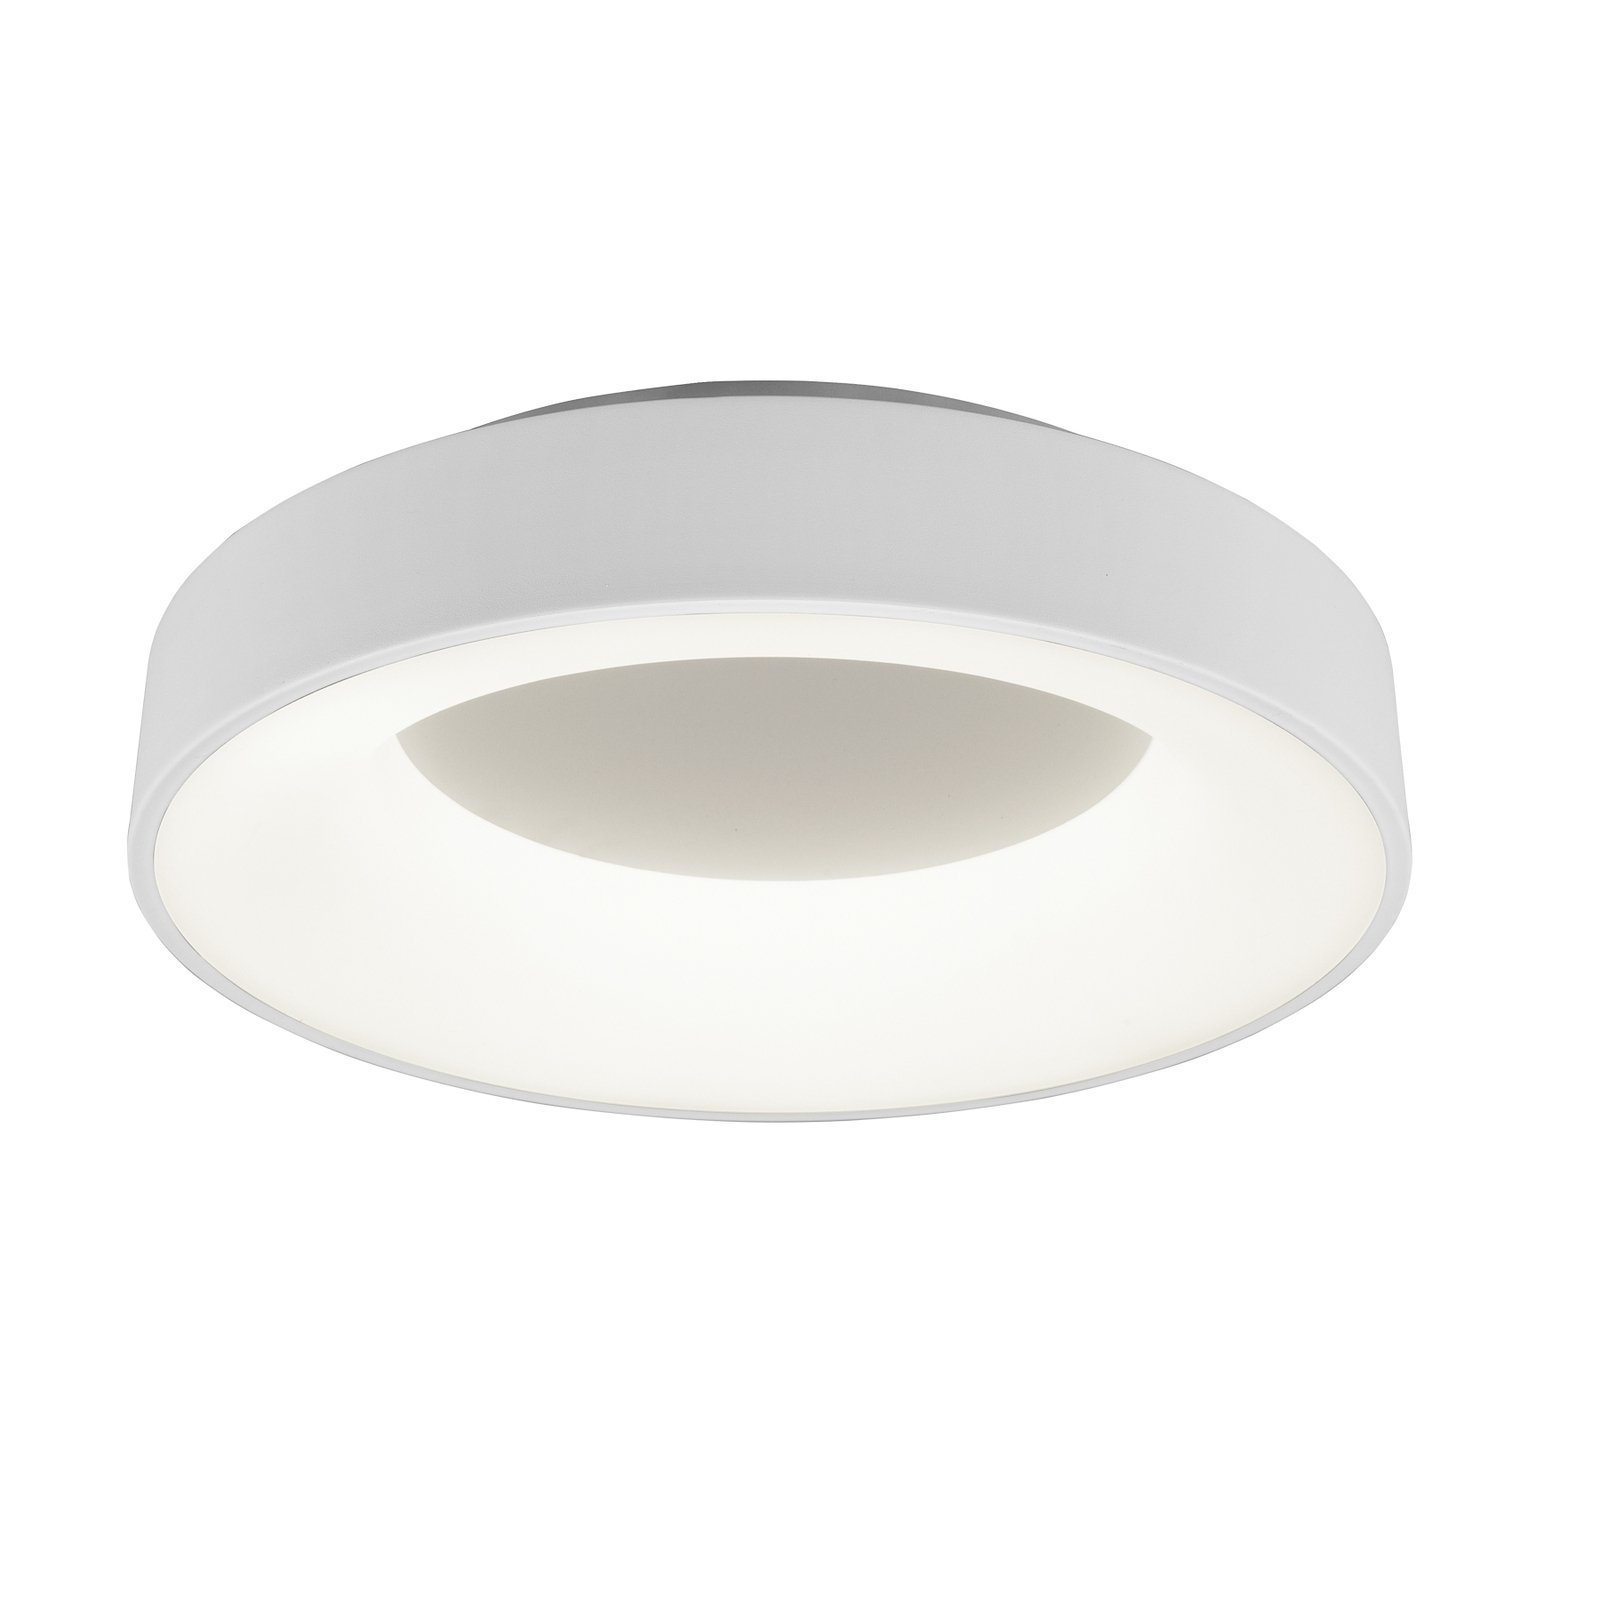 Girona LED ceiling light, switchdim, white